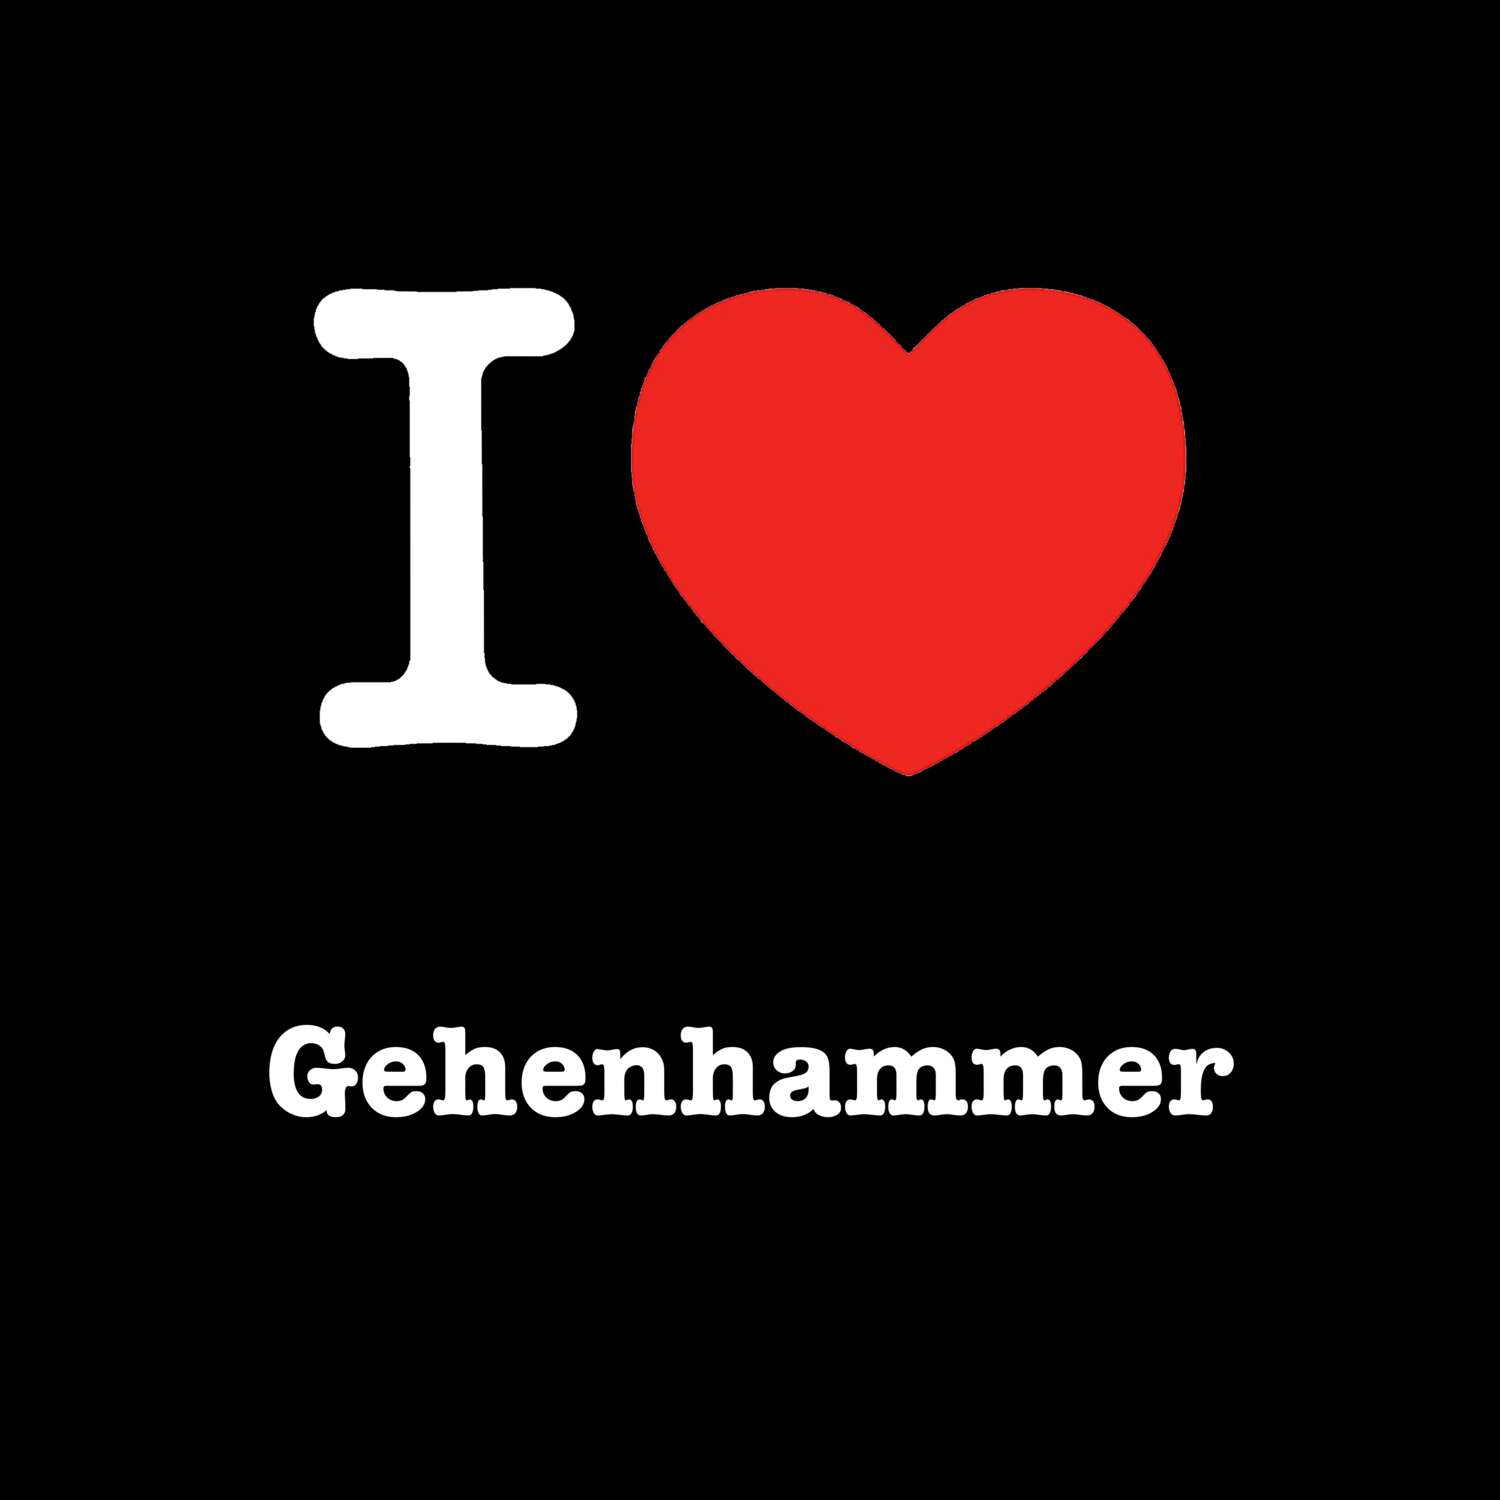 Gehenhammer T-Shirt »I love«